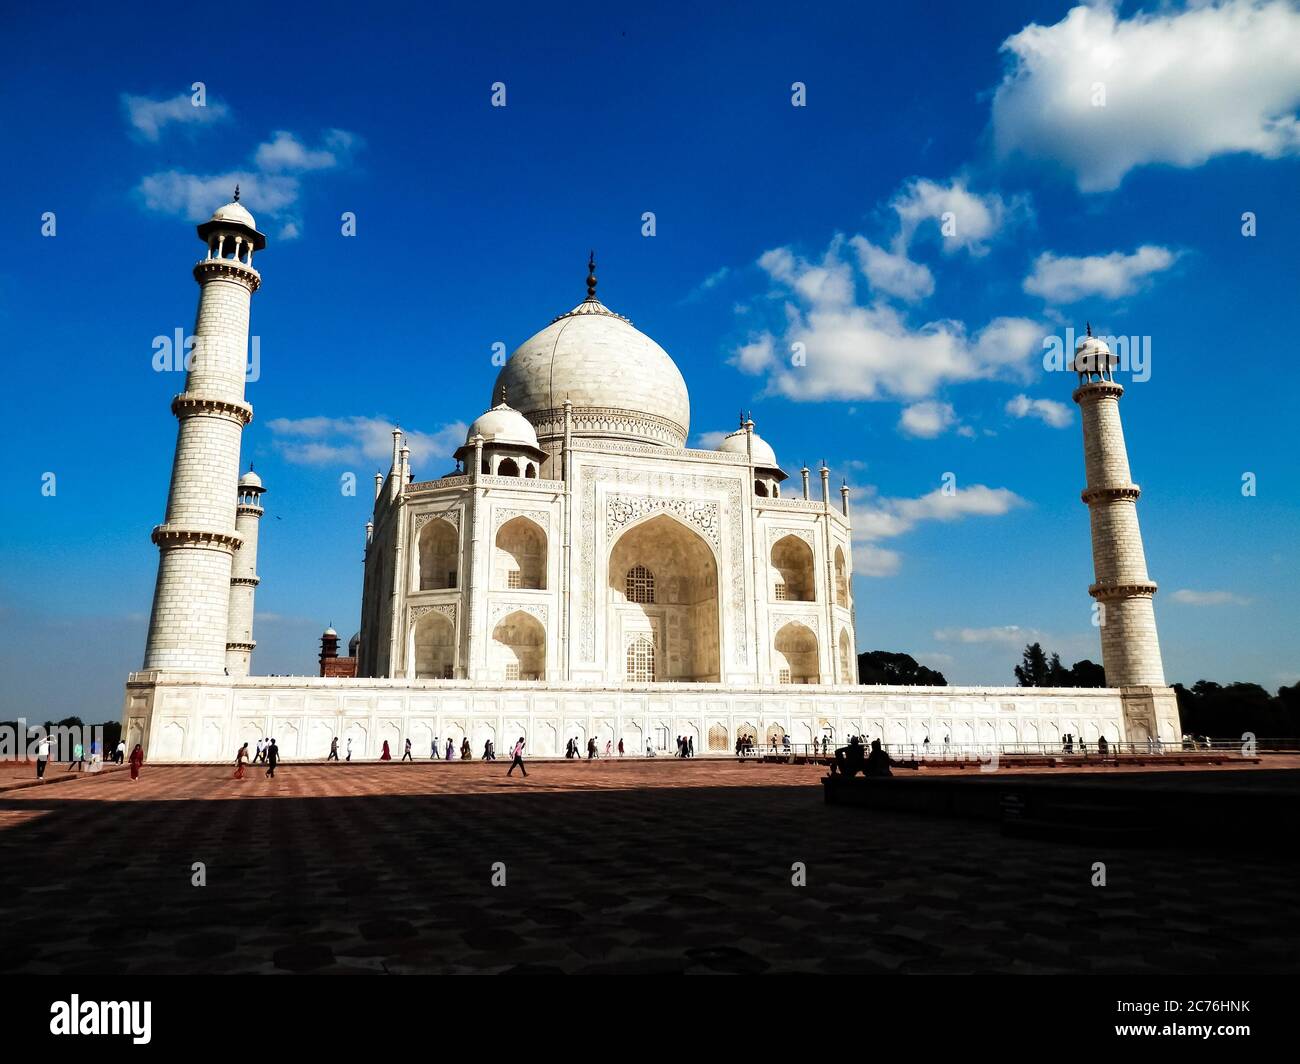 Taj Mahal in Agra, Uttar Pradesh, Indien. Eines der Neuen Sieben Weltwunder und eines der meistbesuchten UNESCO-Welterbestätten Indiens. Stockfoto